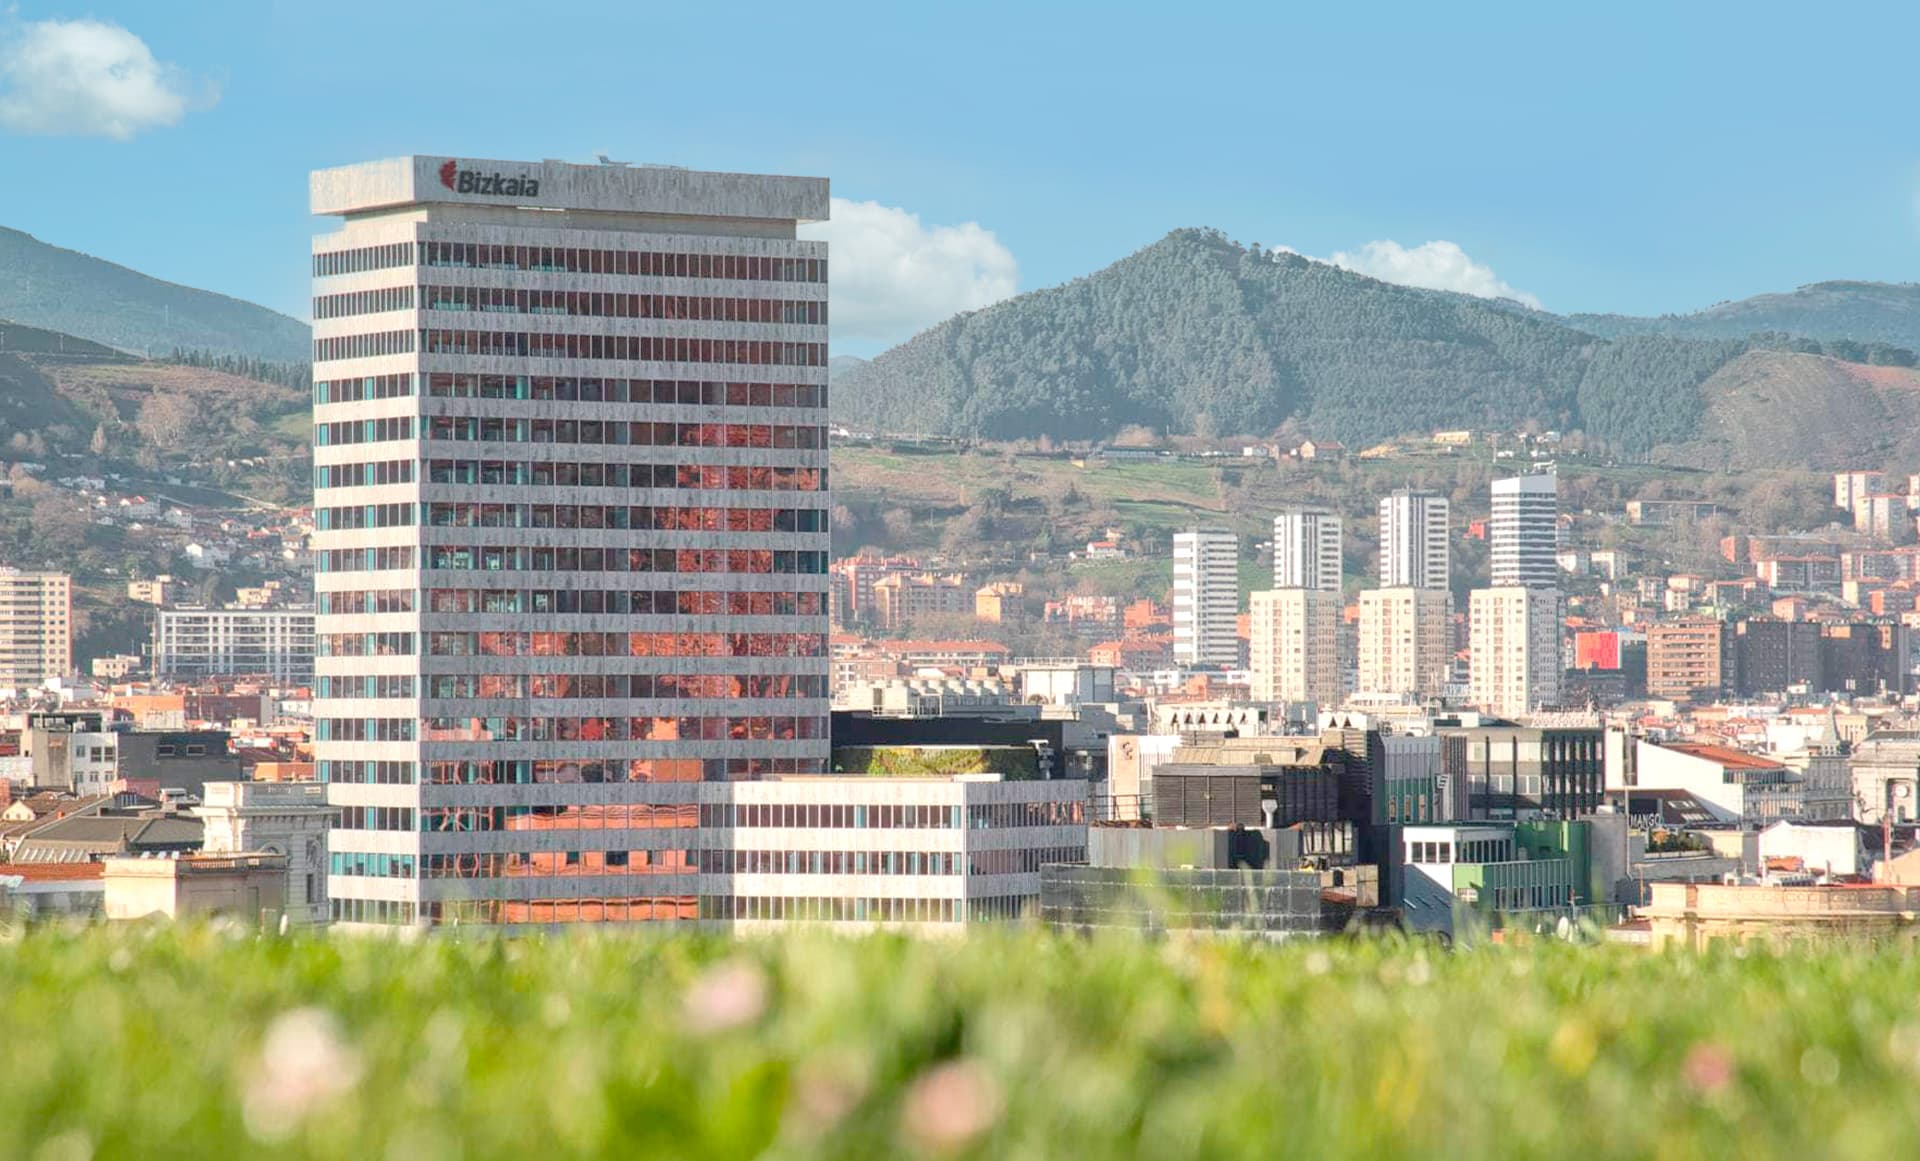 ¡Exploratory Trade Mission lleva startups a Bilbao en busca de innovación!